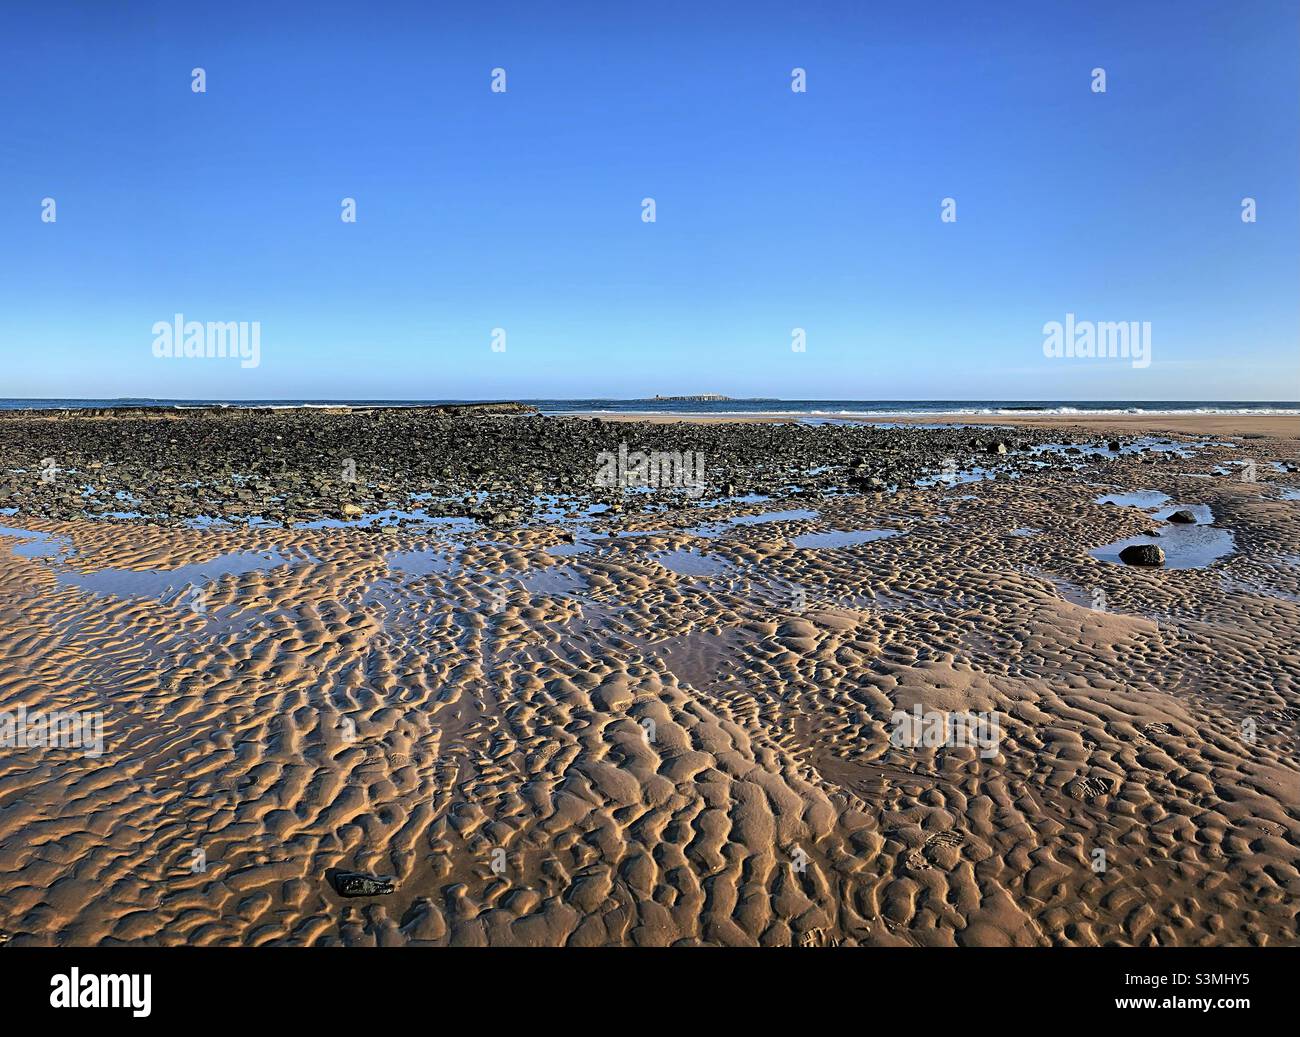 La bassa marea “onde nella sabbia” sulla costa del Northumberland lascia un modello soddisfacente nella sabbia. In lontananza, Coquet Island può essere visto in questo giorno di cielo blu chiaro Foto Stock